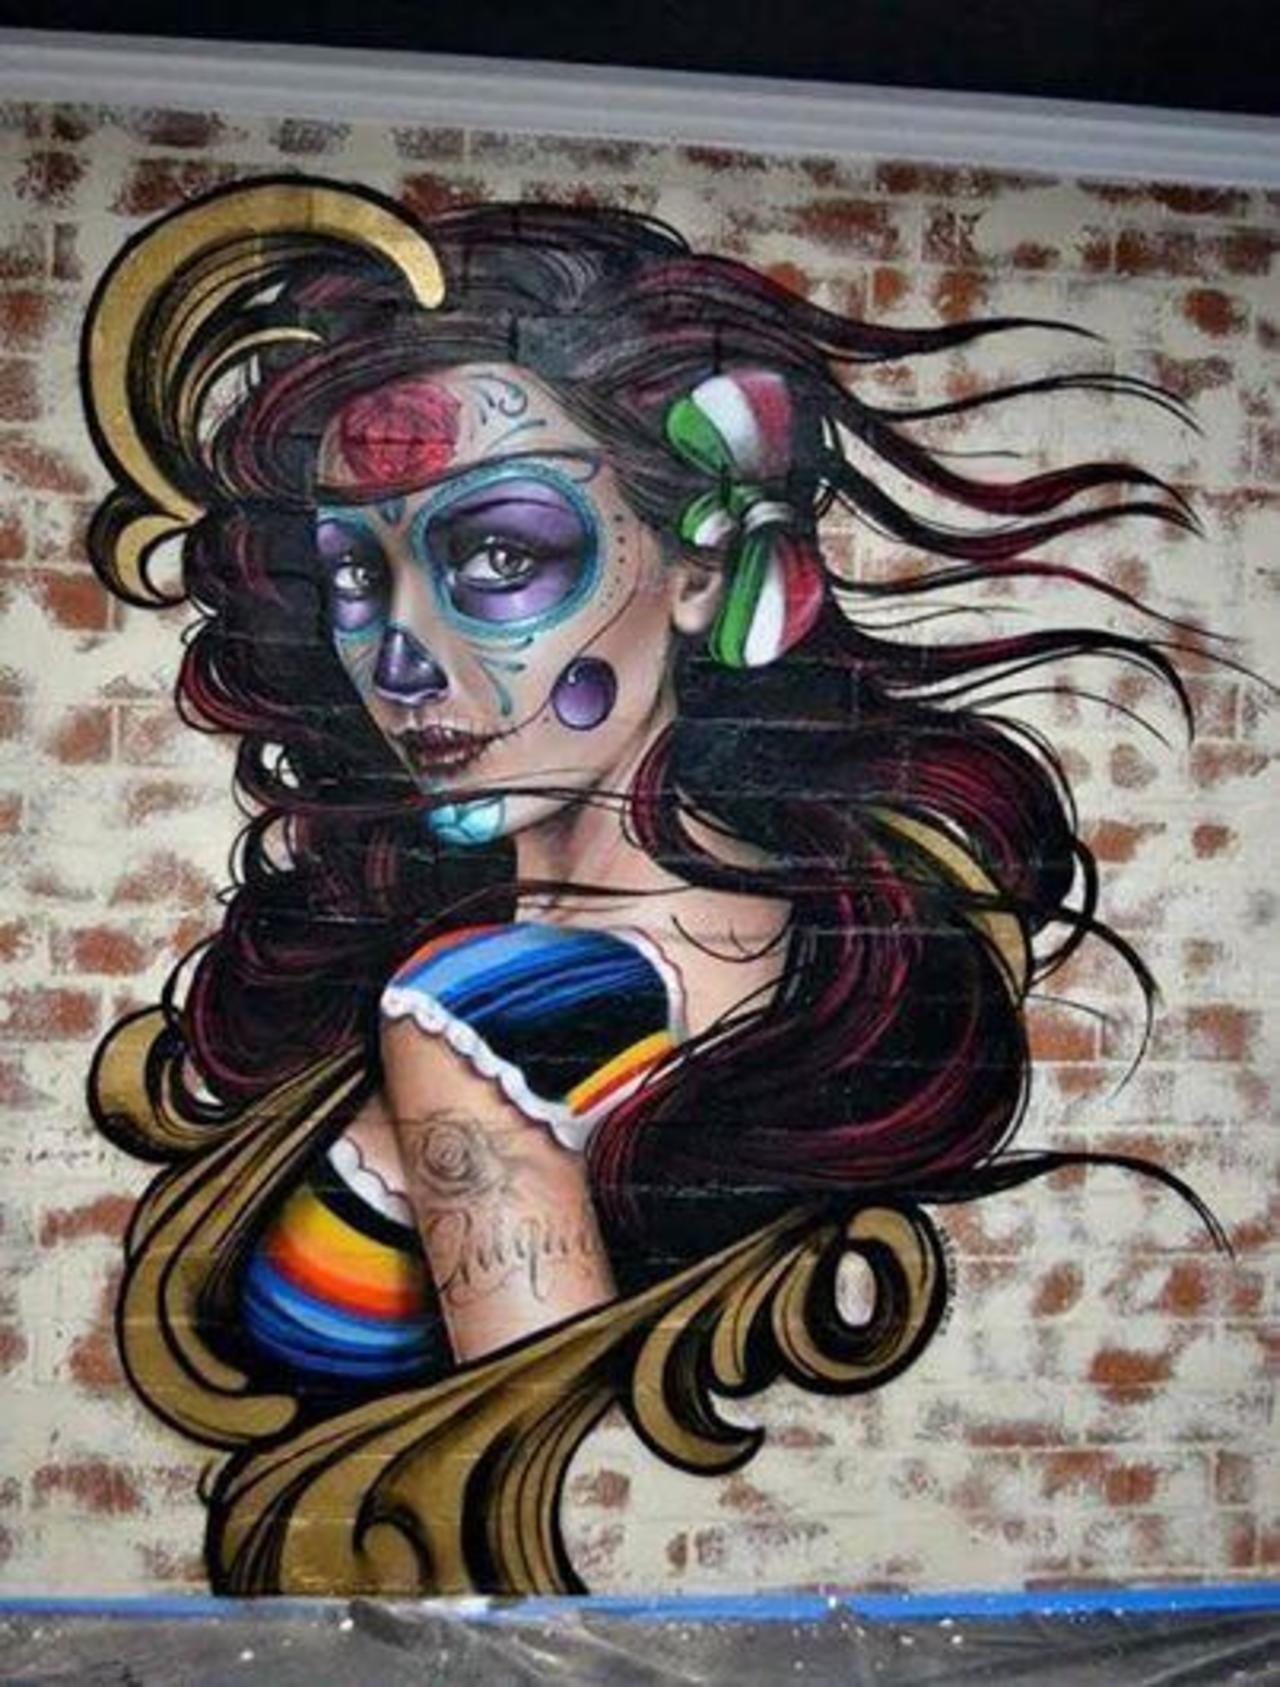 “@5putnik1: Mexi-Punk #graffiti #streetart #art #funky #dope . : http://t.co/X2drVXcKE8